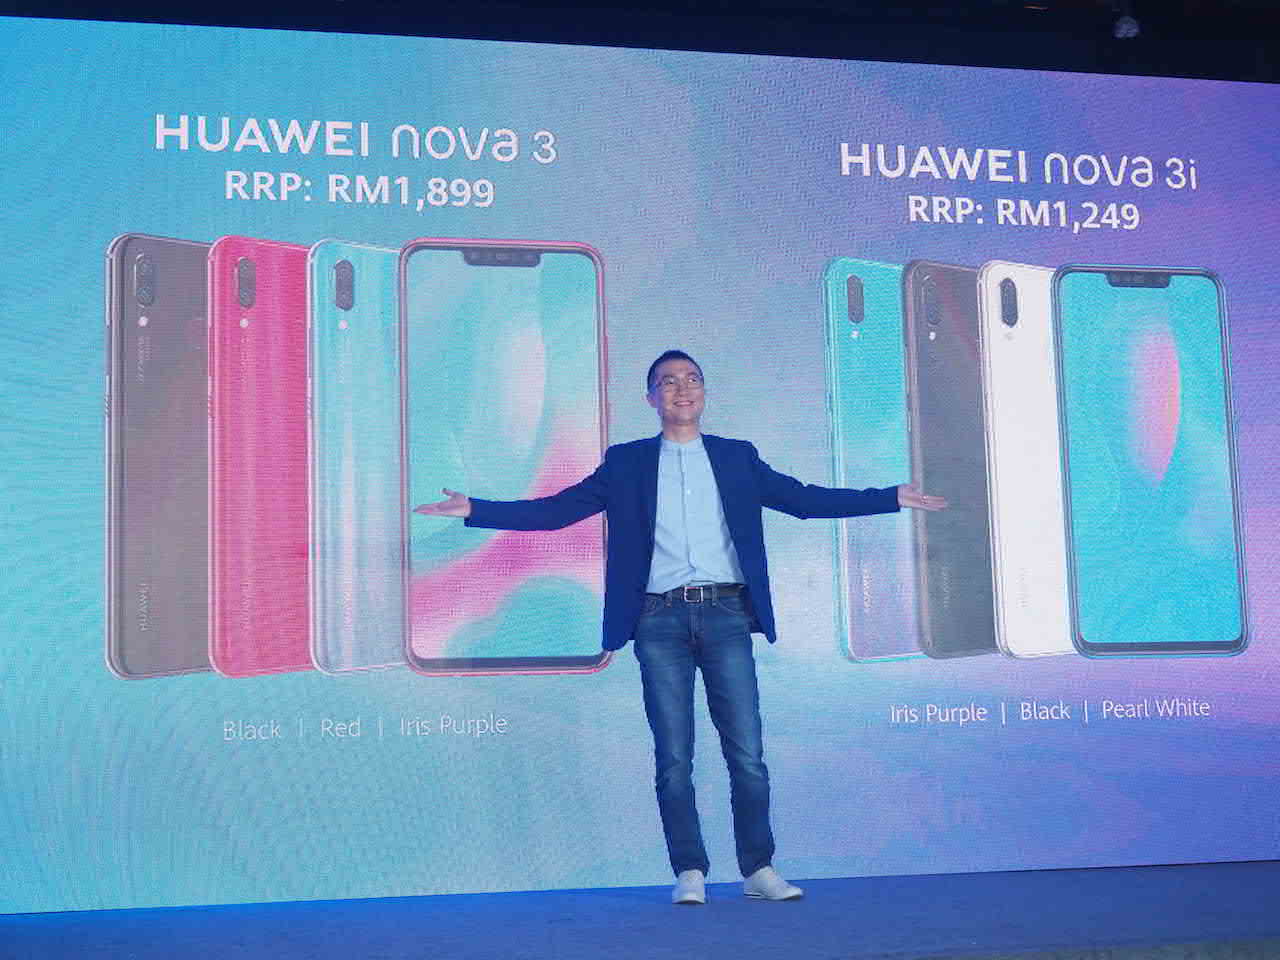 Huawei nova 3 and 3i